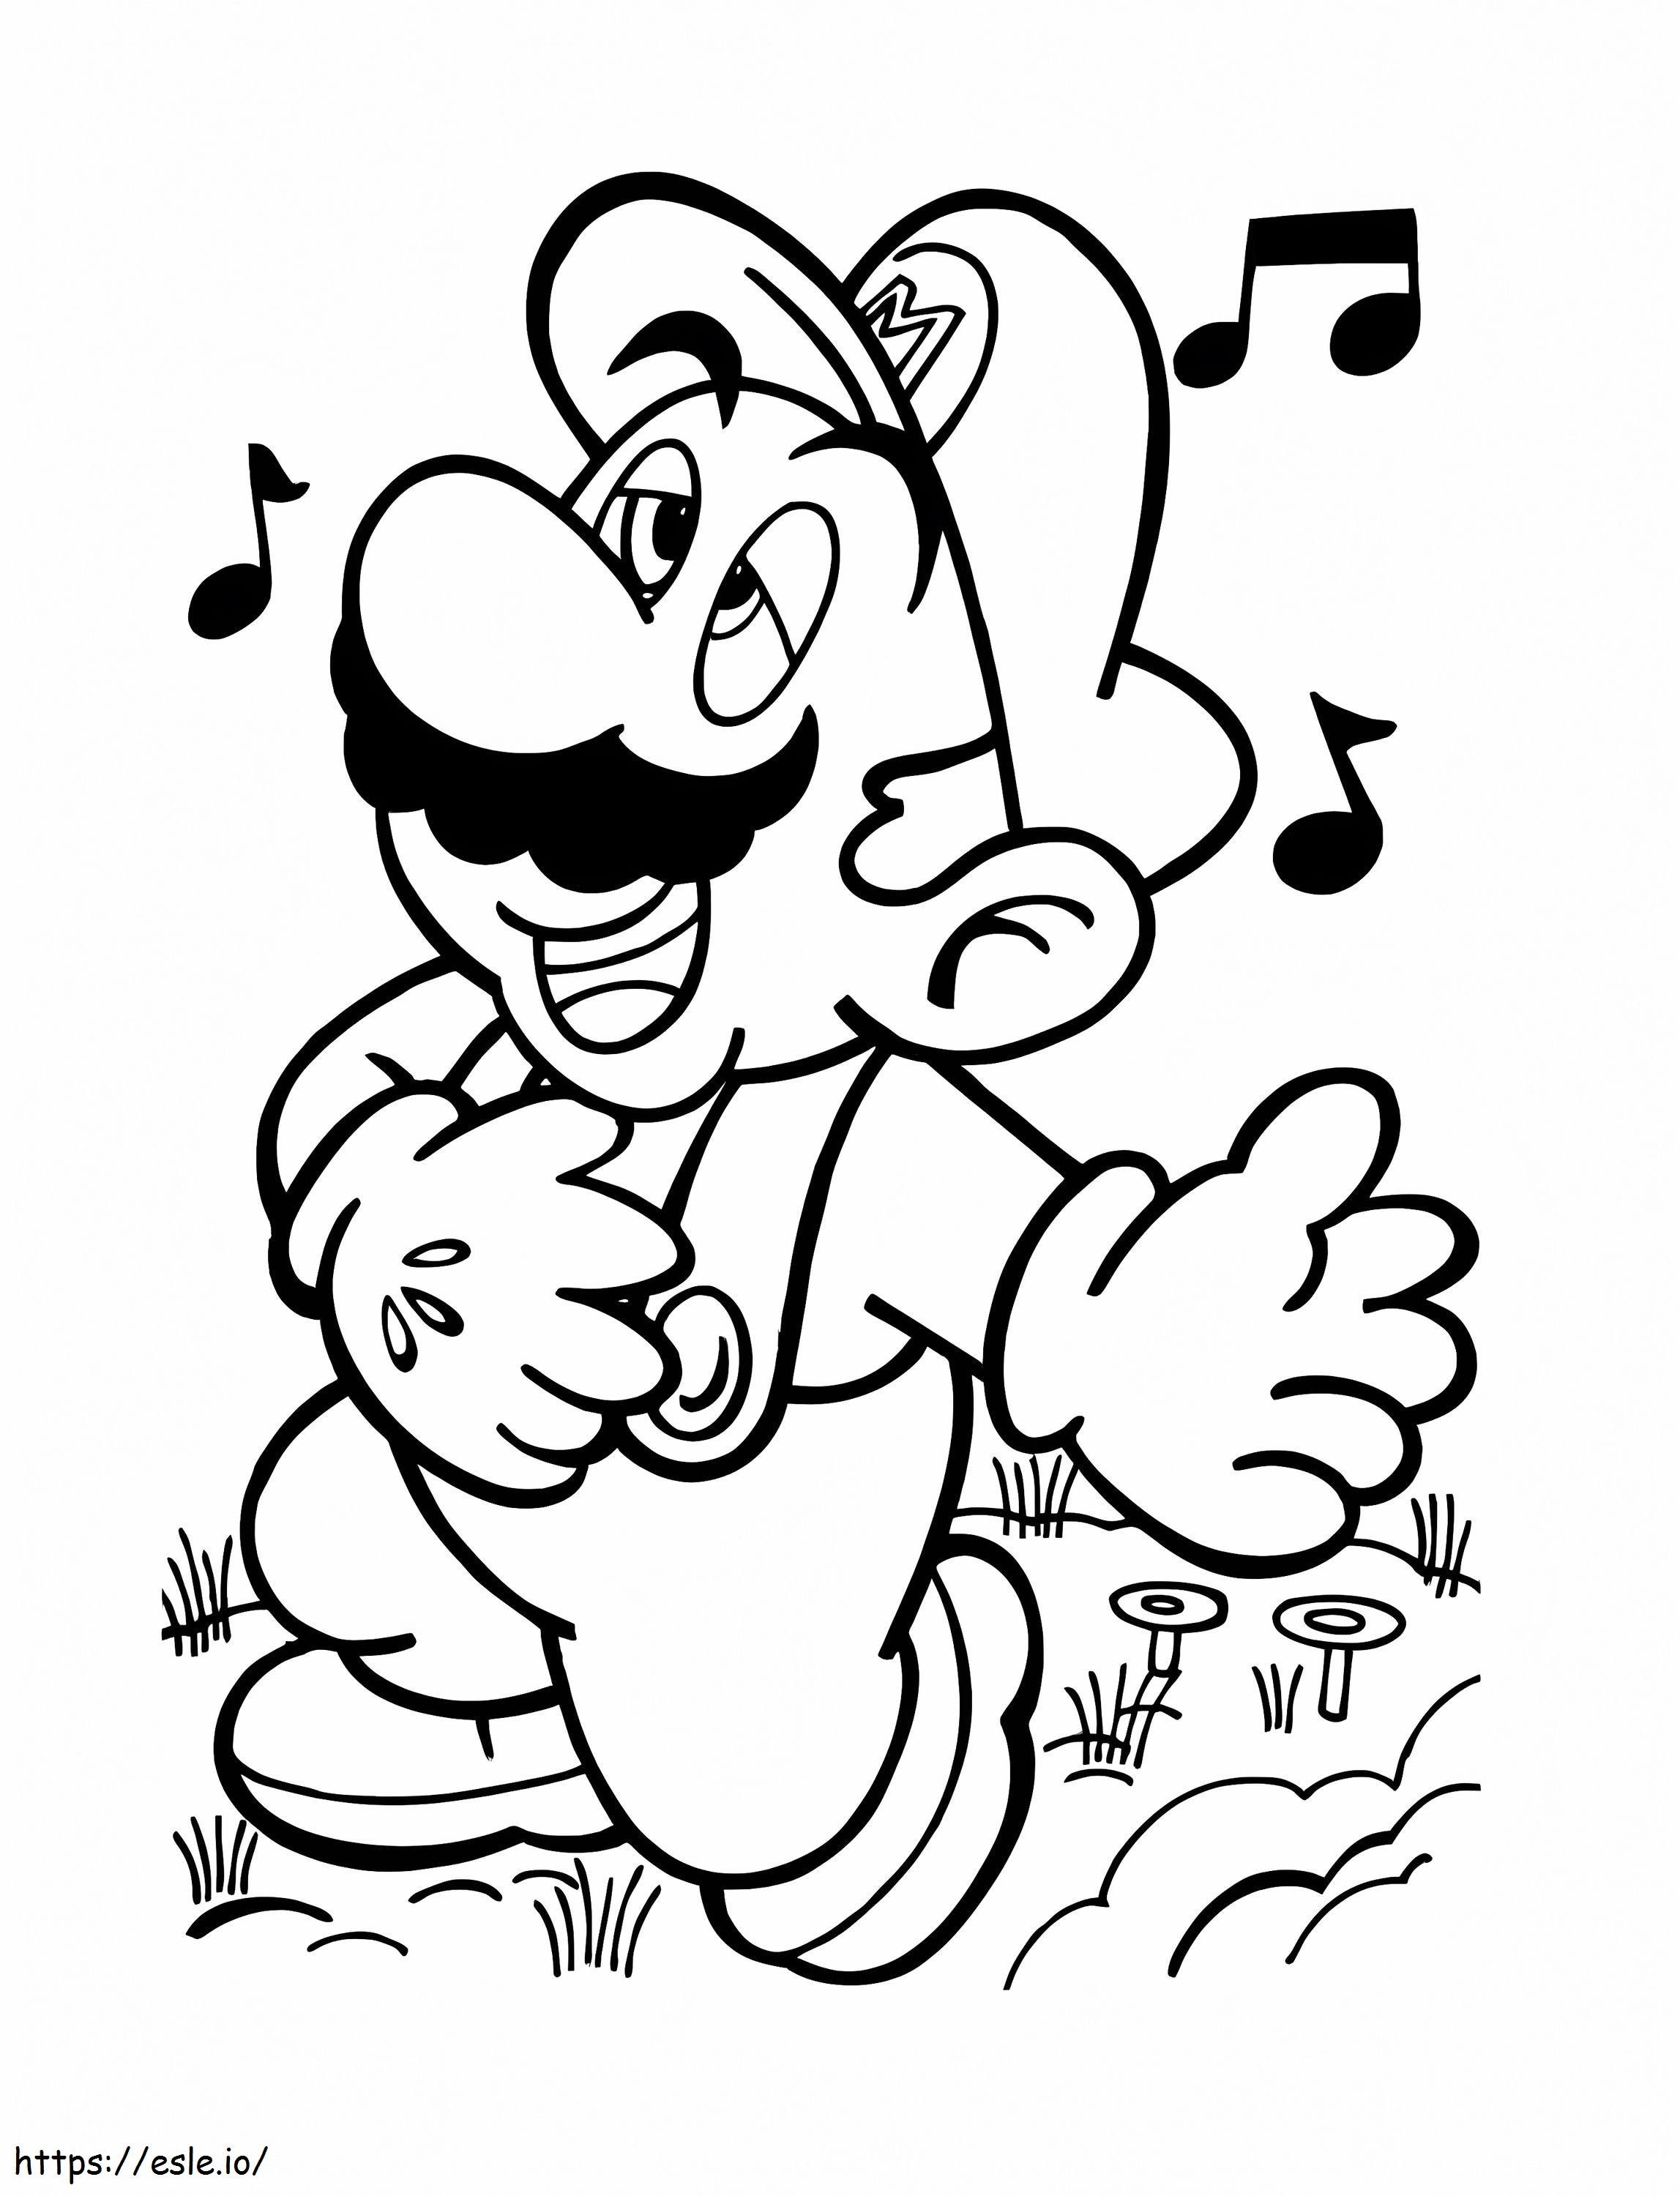 Mario Song coloring page